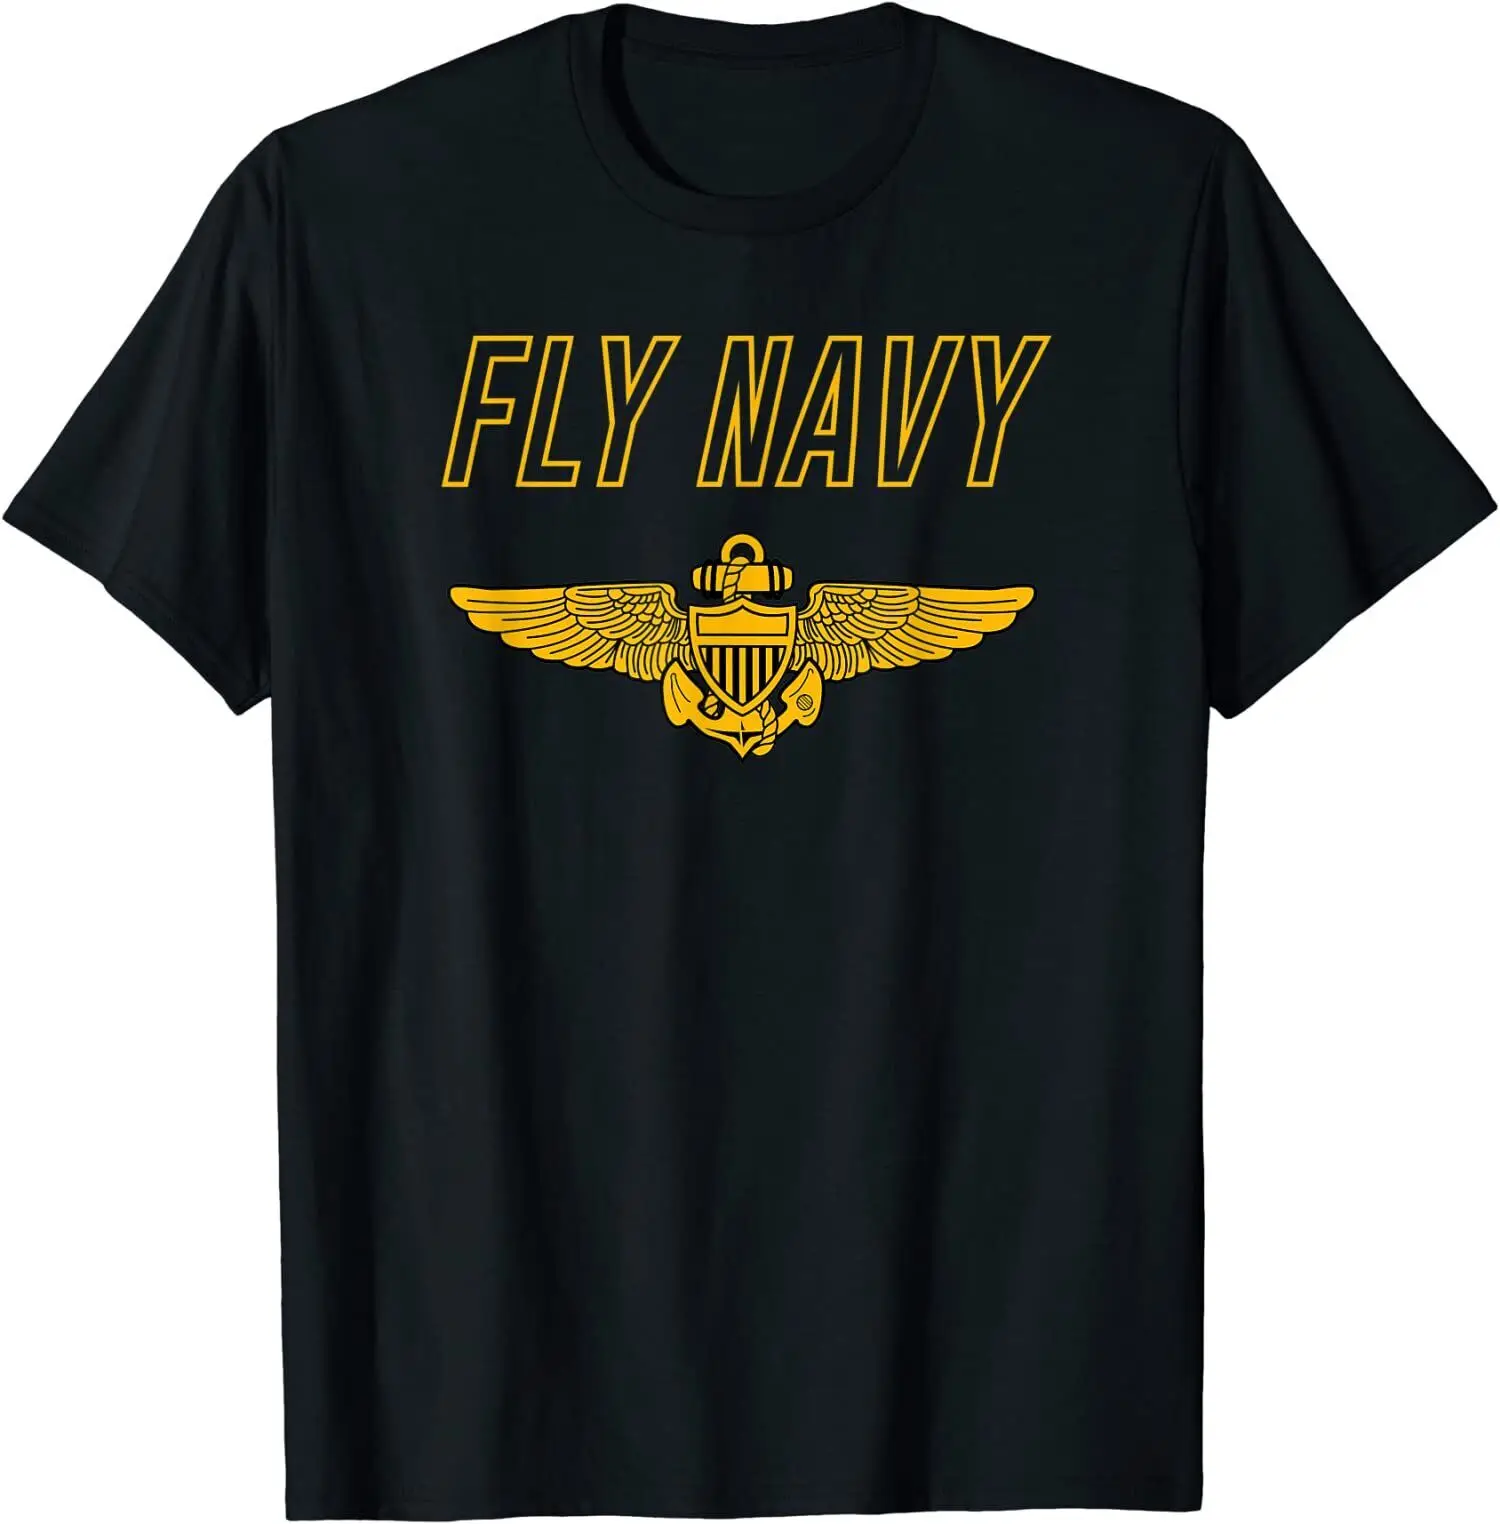 

Летняя мужская классическая футболка Fly Navy, классная футболка премиум-класса в эстетике Tumblr, новая забавная футболка с коротким рукавом, мод...